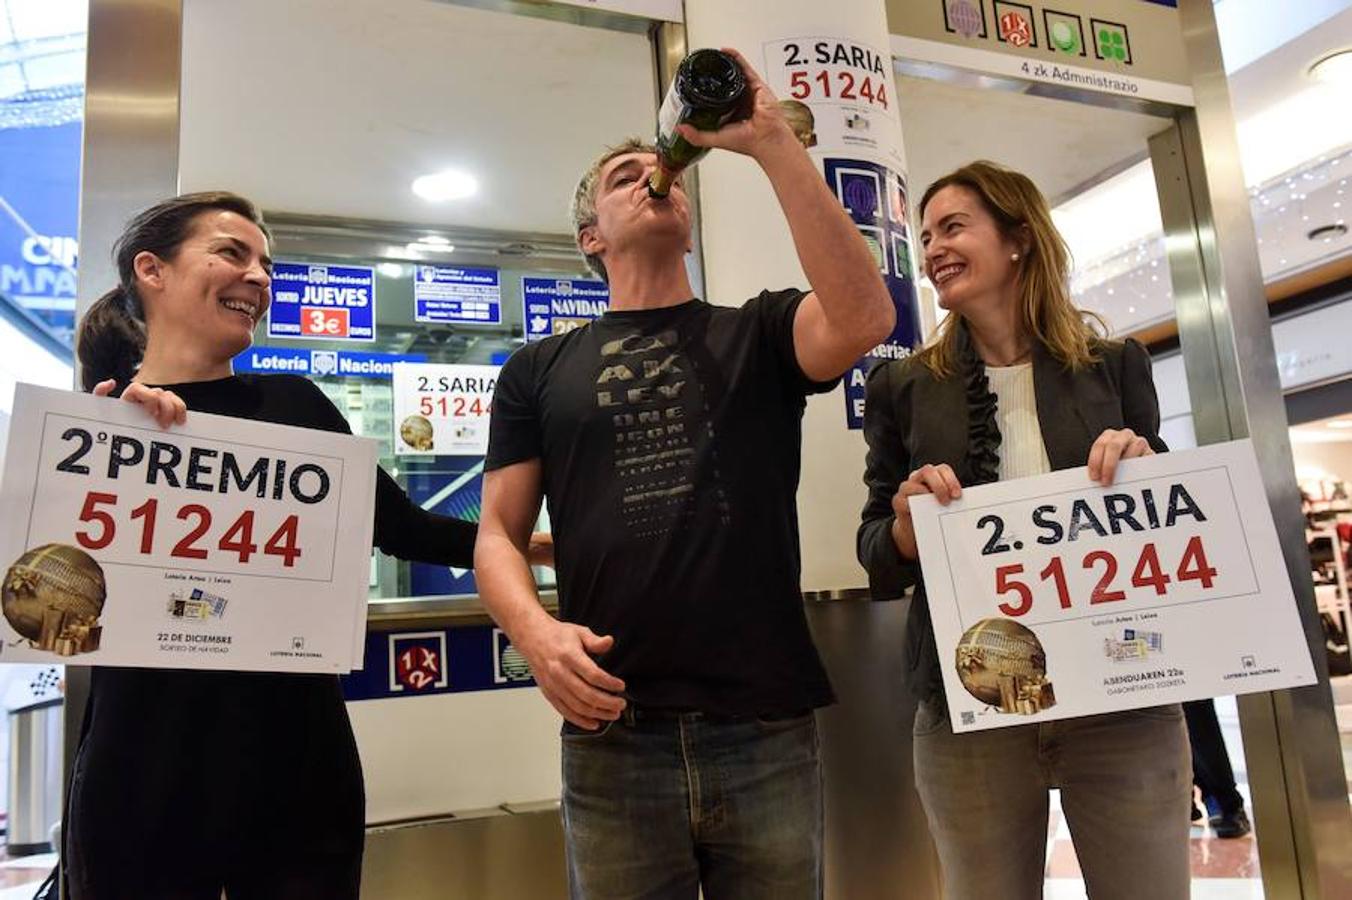 Los propietarios de la administración de Lotería ubicada en el centro comercial Artea, de Leioa (Bizkaia),celebran que han vendido parte del segundo premio del Sorteo de Navidad (51.244) por un valor total de 31.250.000 euros. 